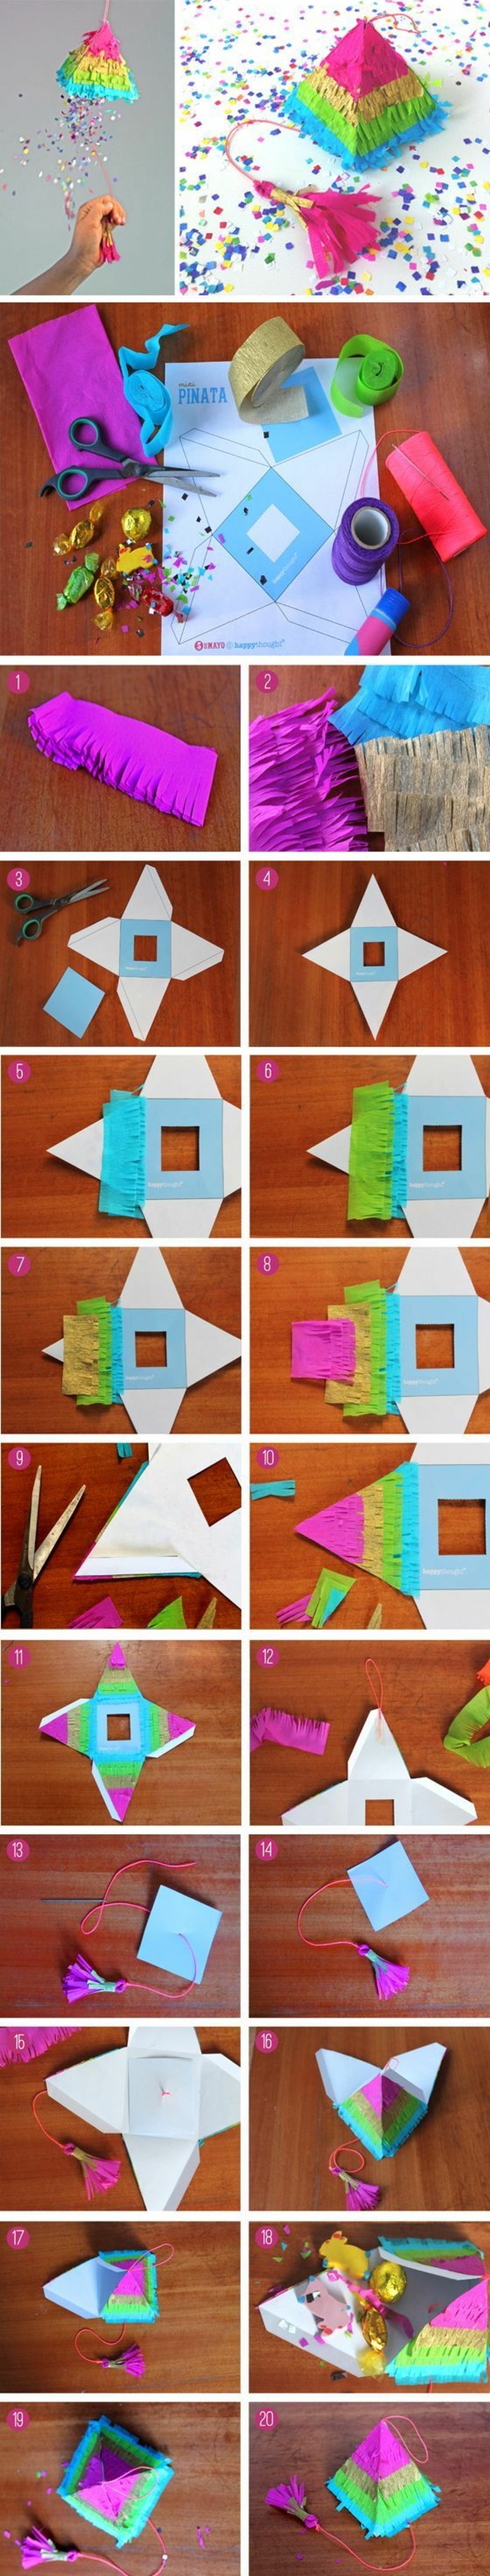 Faire une petite pyramide de carton soi-même, papier coloré, ciseaux